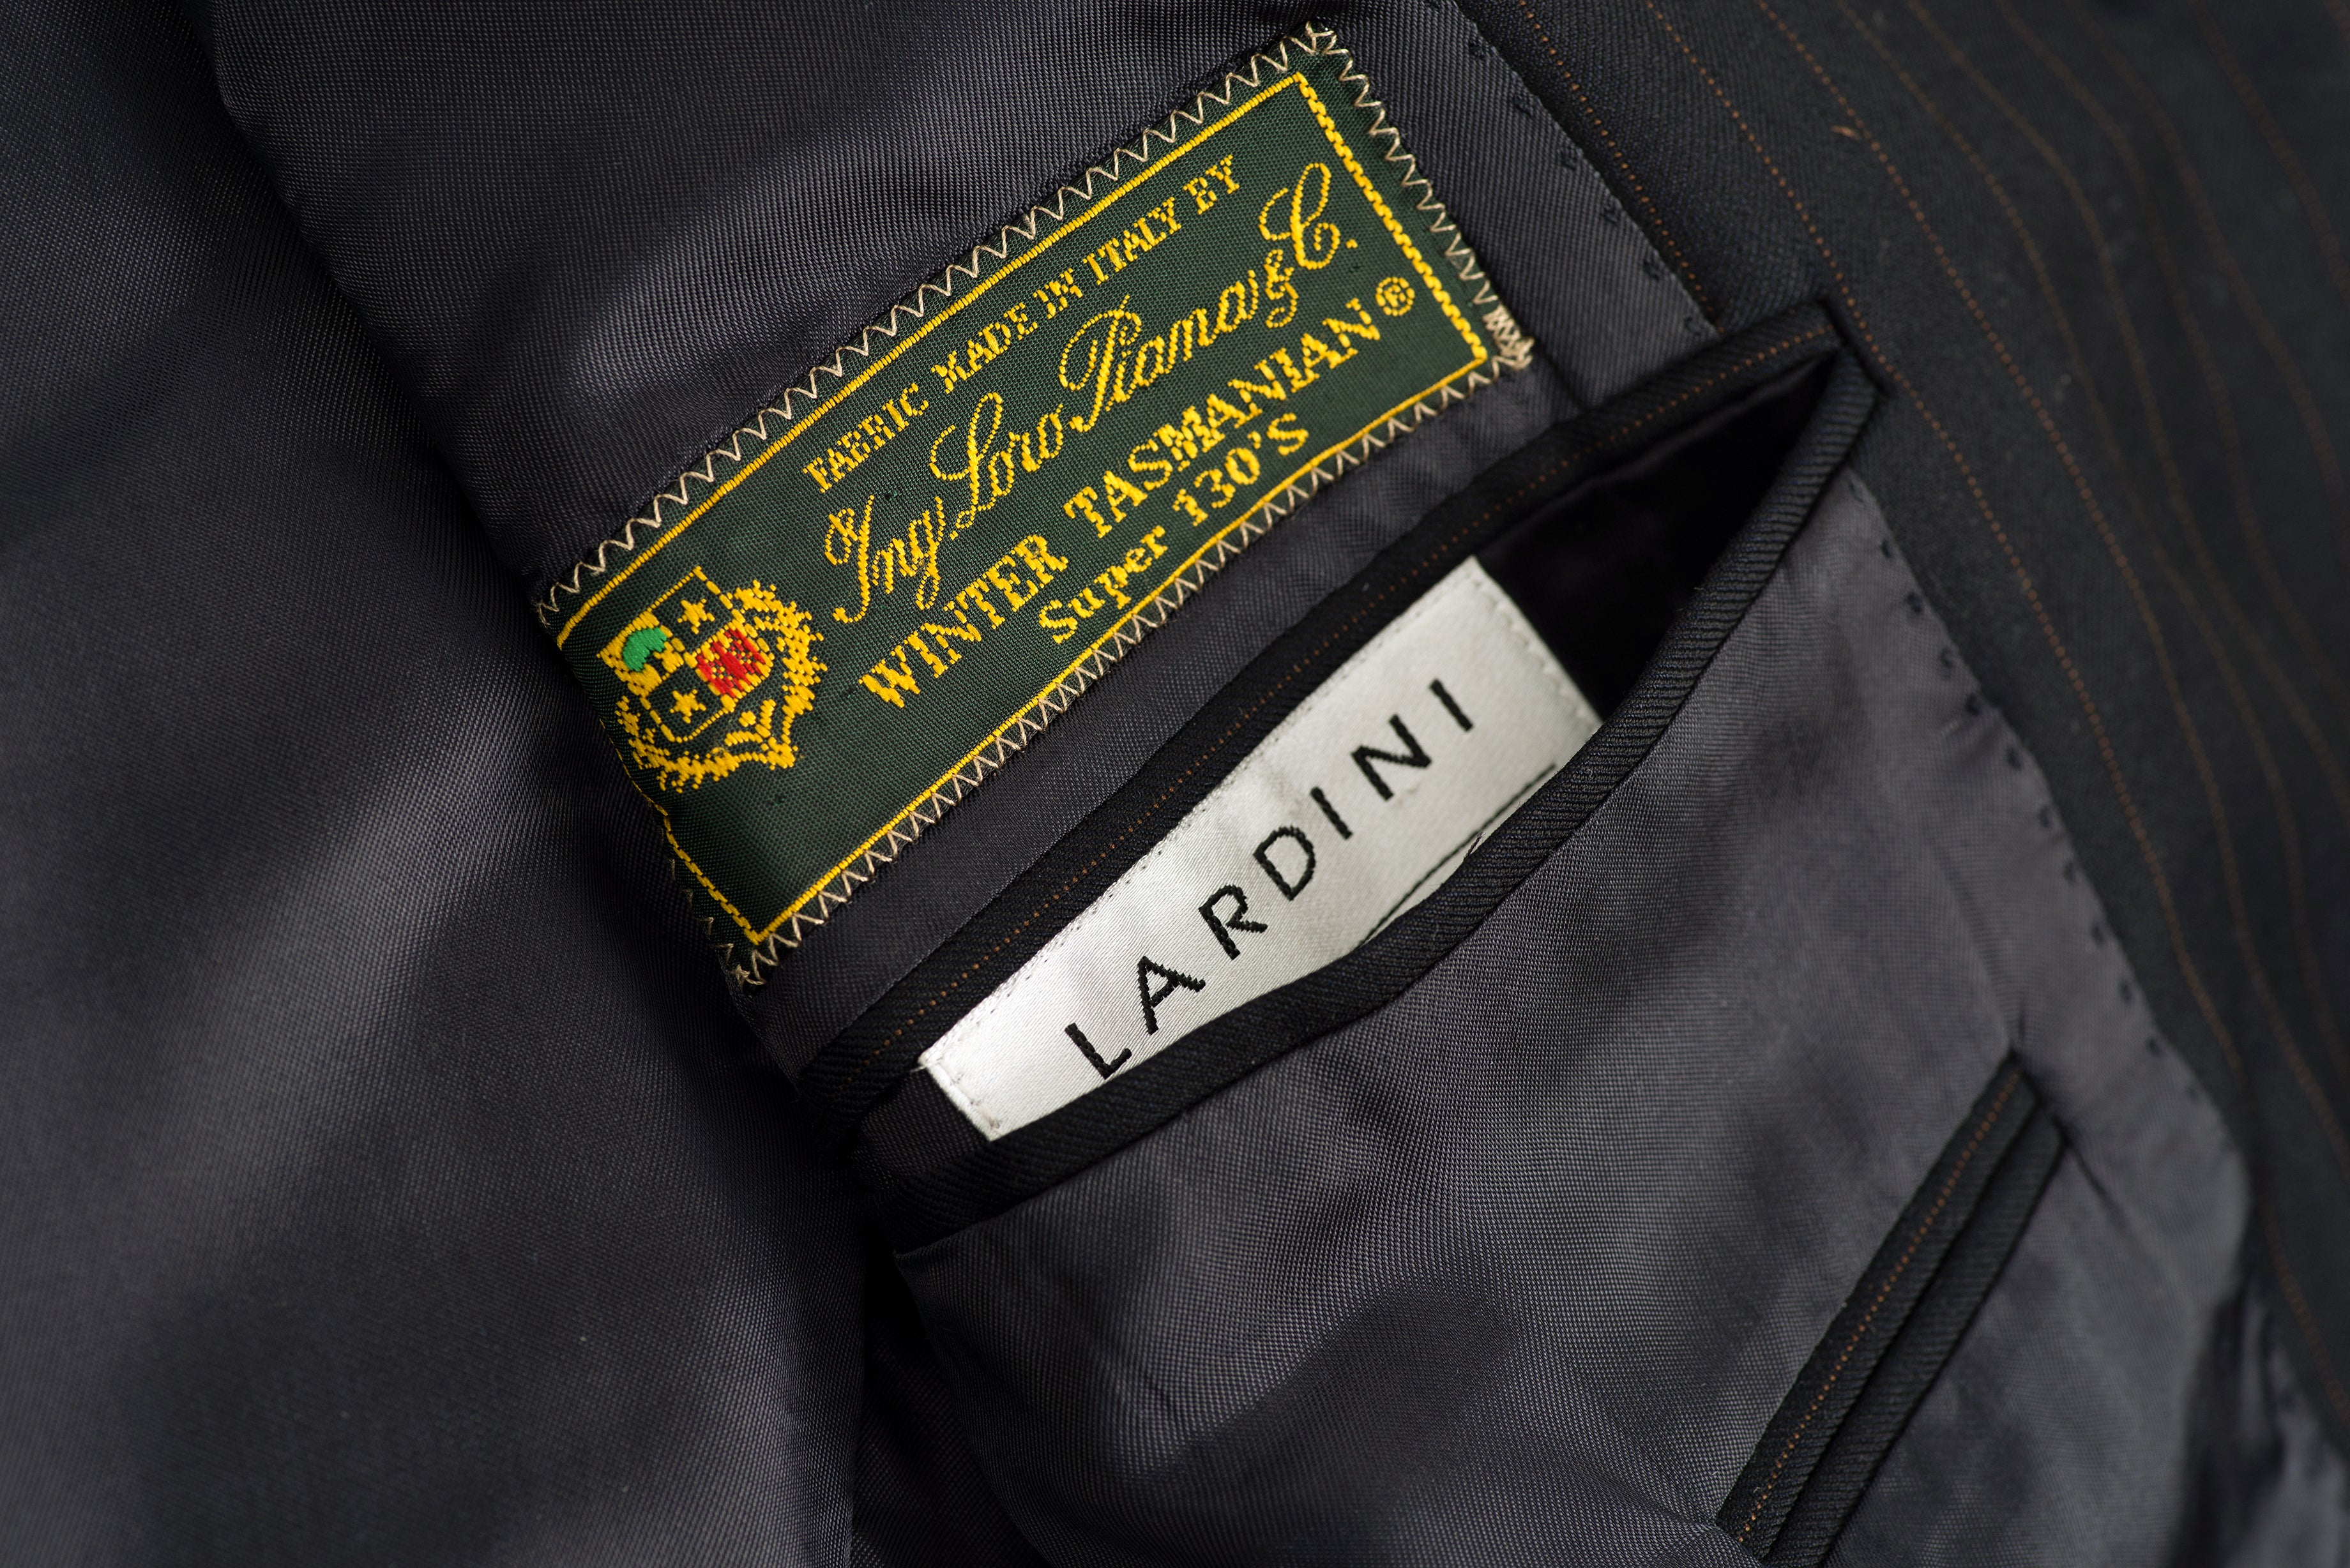 Lardini Super 130's Wool Navy Blue and Copper Striped 2 Pieces Suit, US 36R, EU 46R